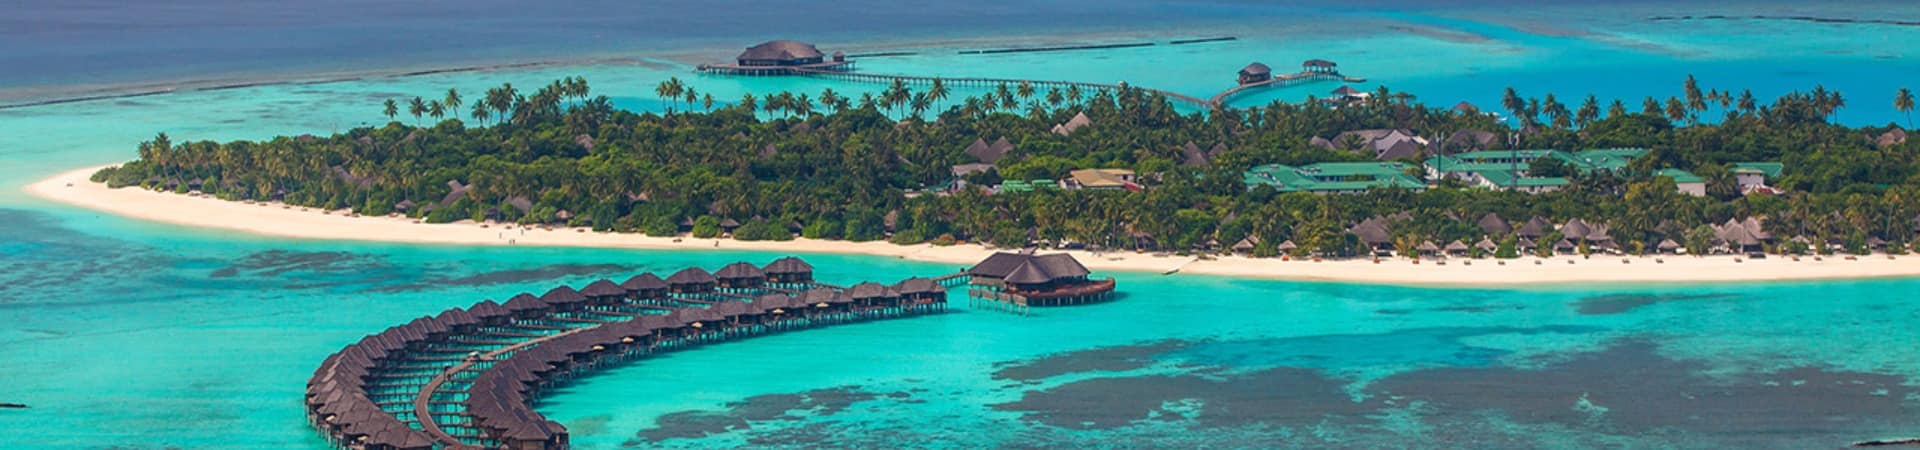 Sun siyam iru fushi maldives vista aerea